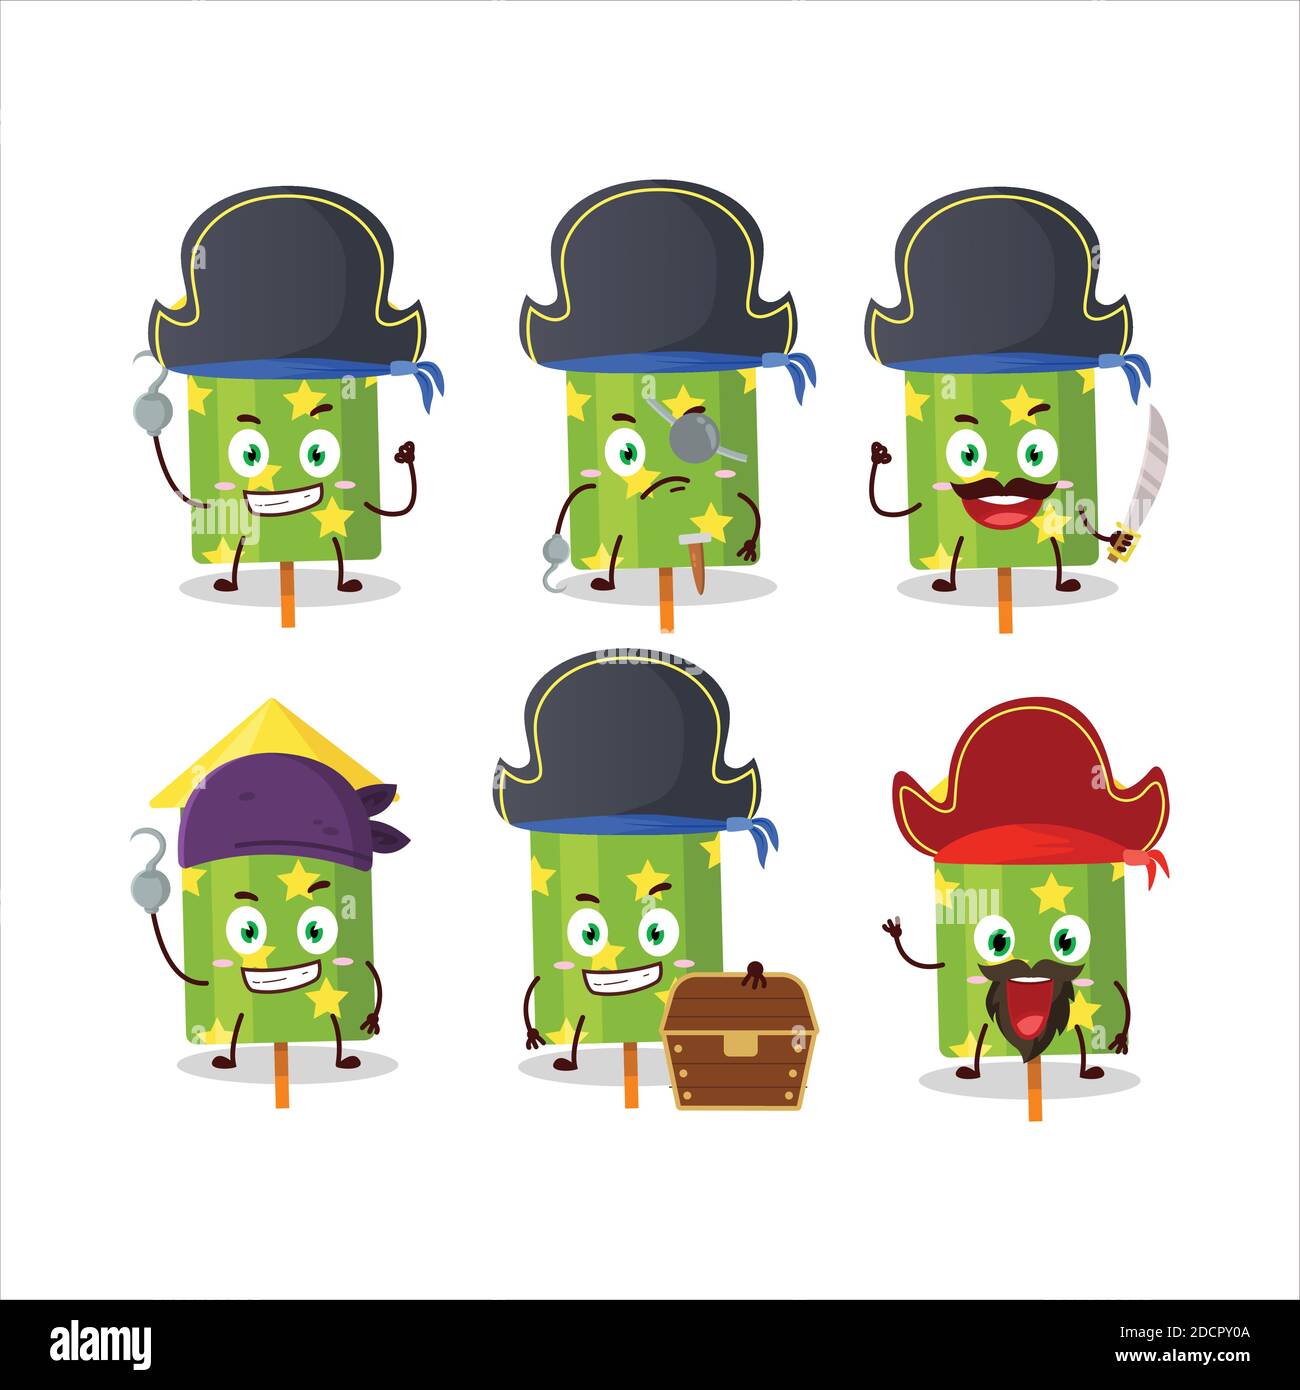 Personaje de dibujos animados de petardo verde con varios emoticones piratas. Ilustración vectorial Ilustración del Vector